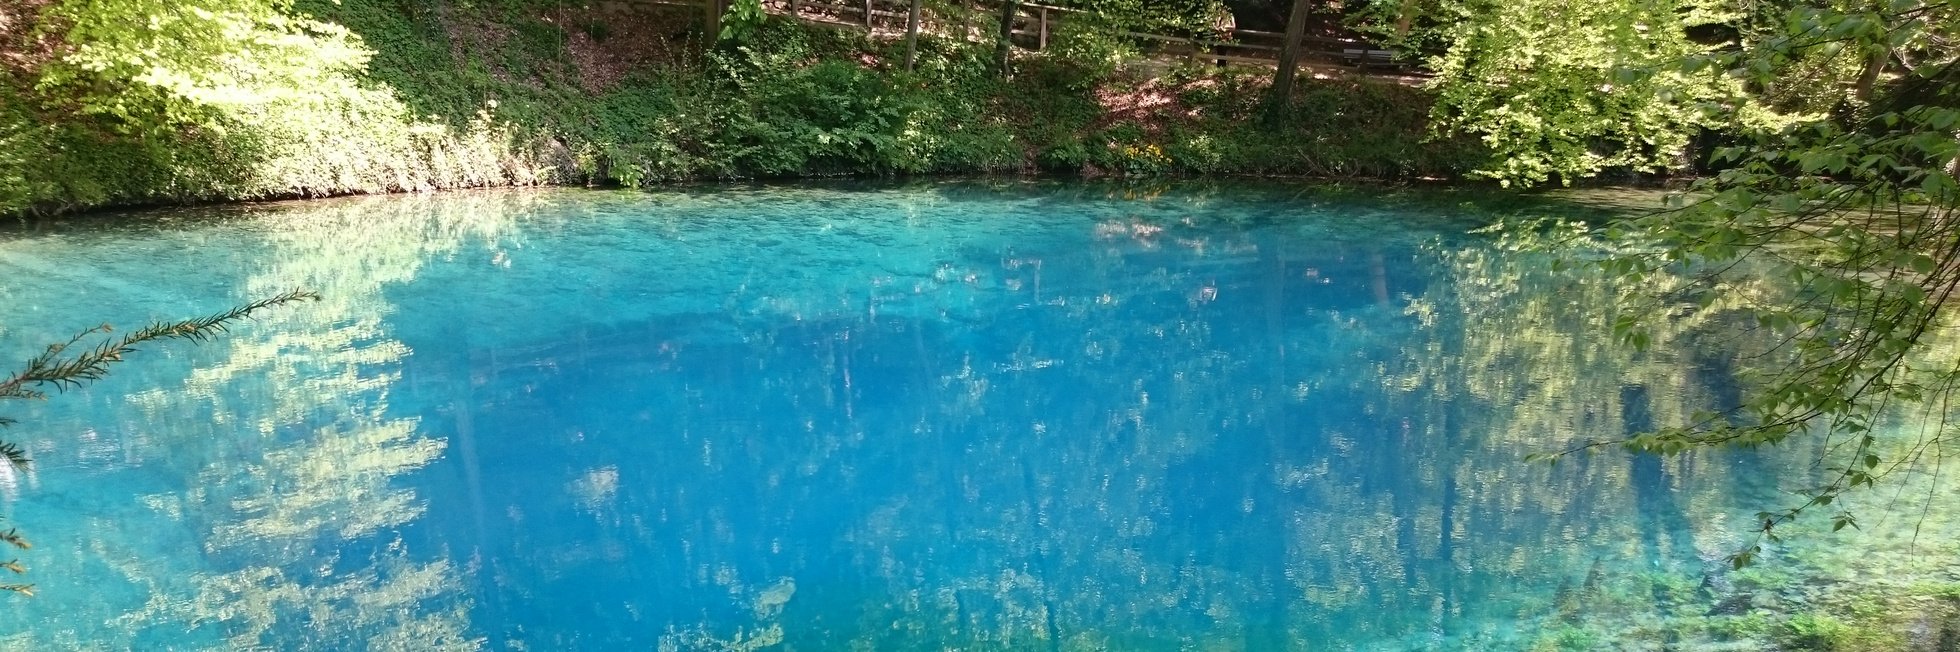 Bild vom "Blautöpfchen" einem See im Schwäbischen